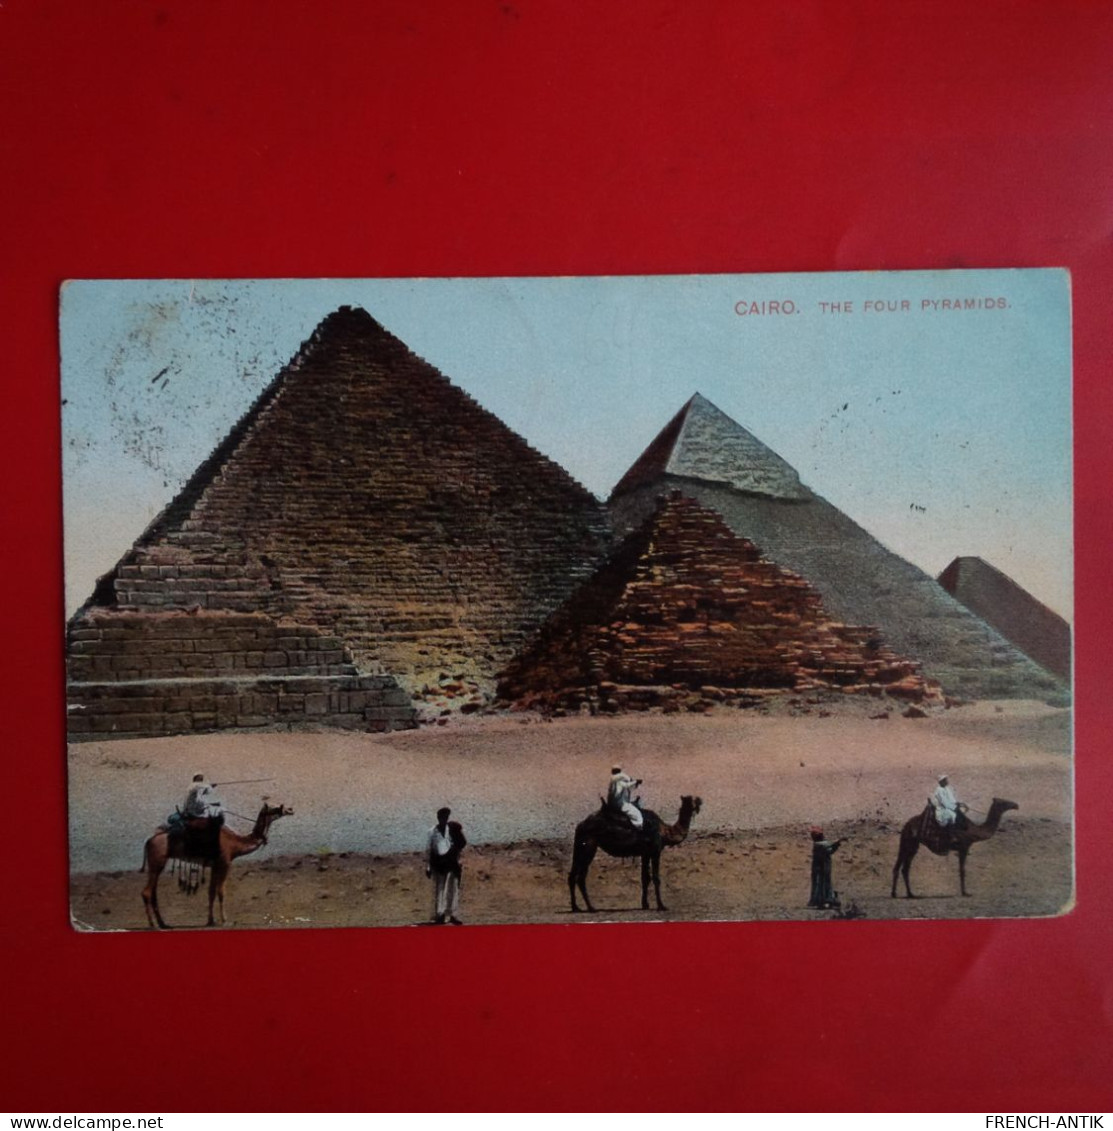 CAIRO THE FOUR PYRAMIDS - Pirámides